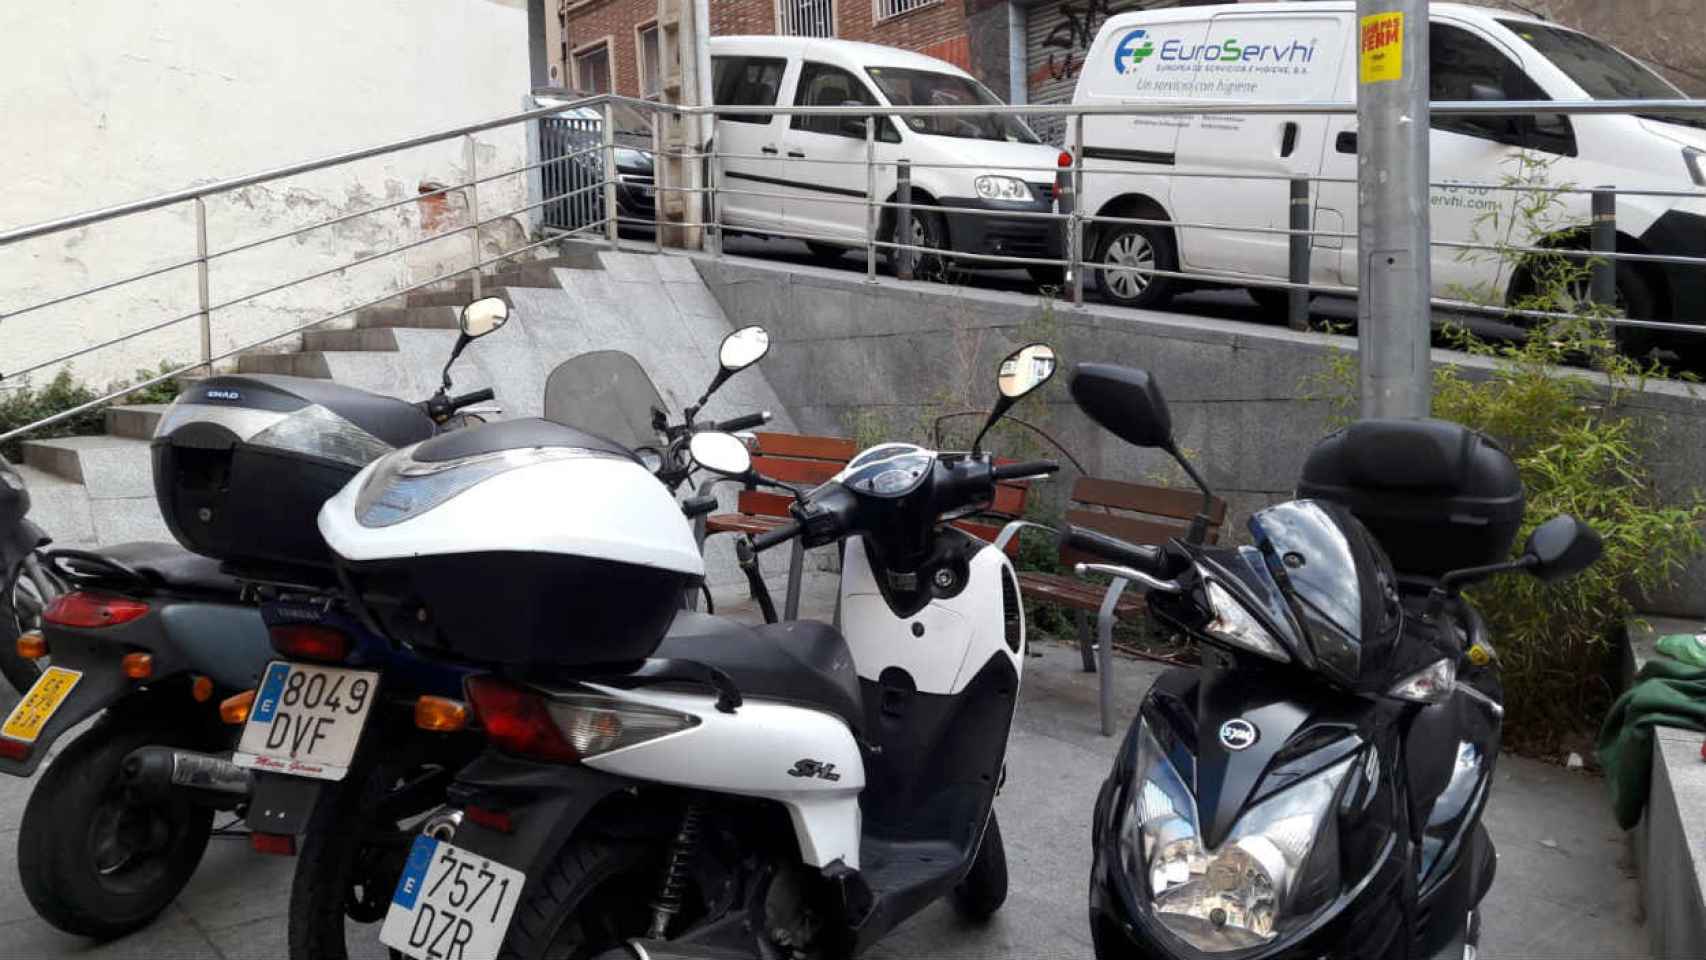 Difícil el acceso a los bancos para descansar por culpa de las motos aparcadas